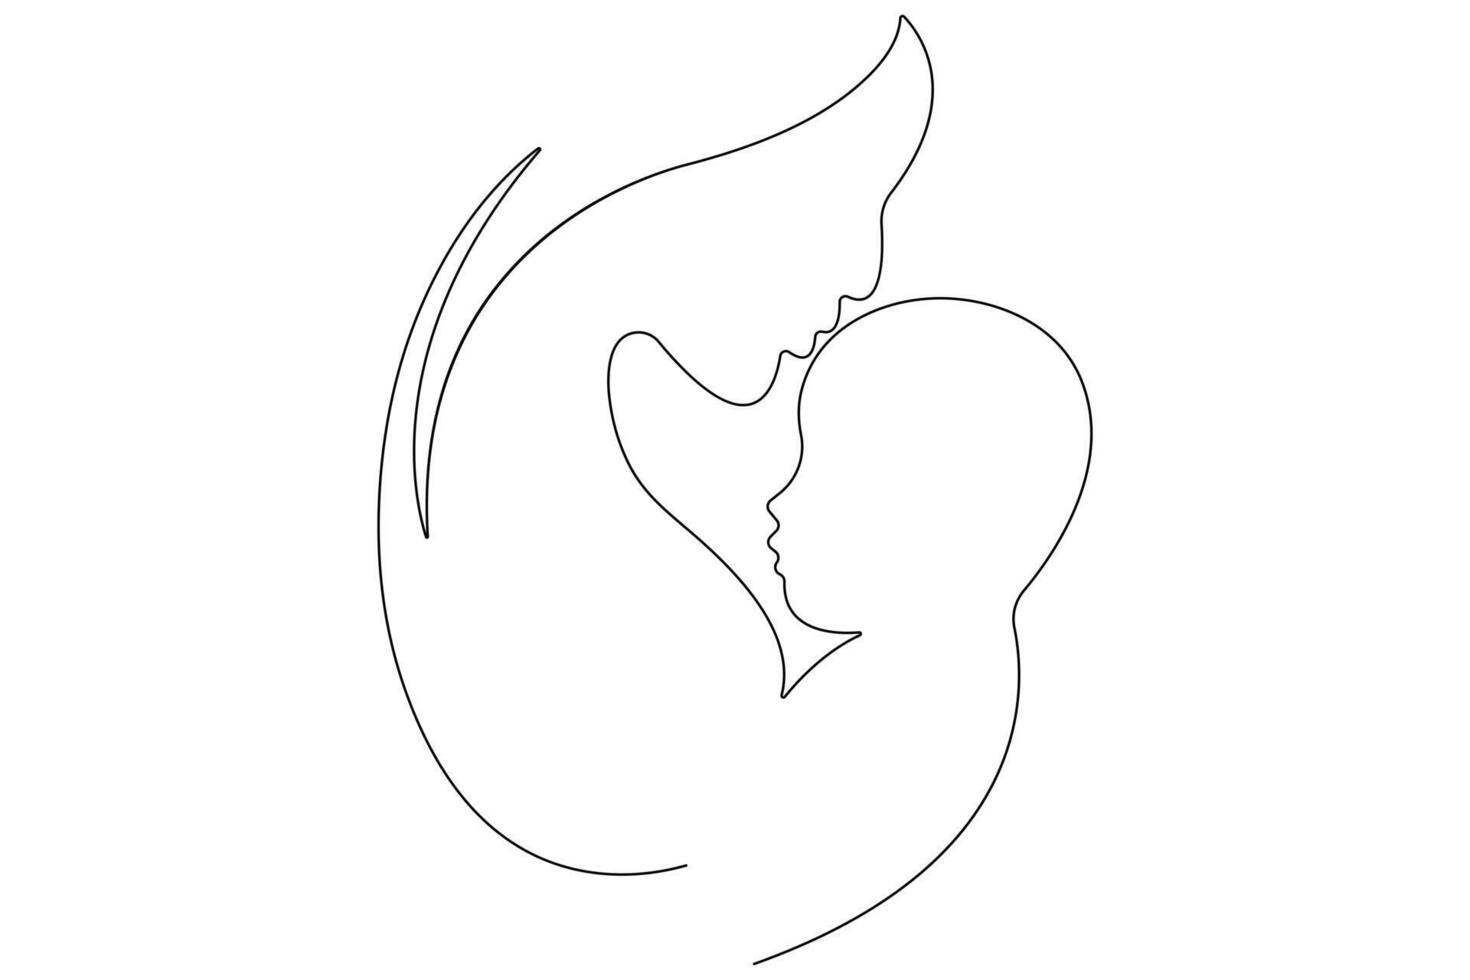 kontinuerlig enda linje konst teckning av bebis skiss och begrepp översikt vektor